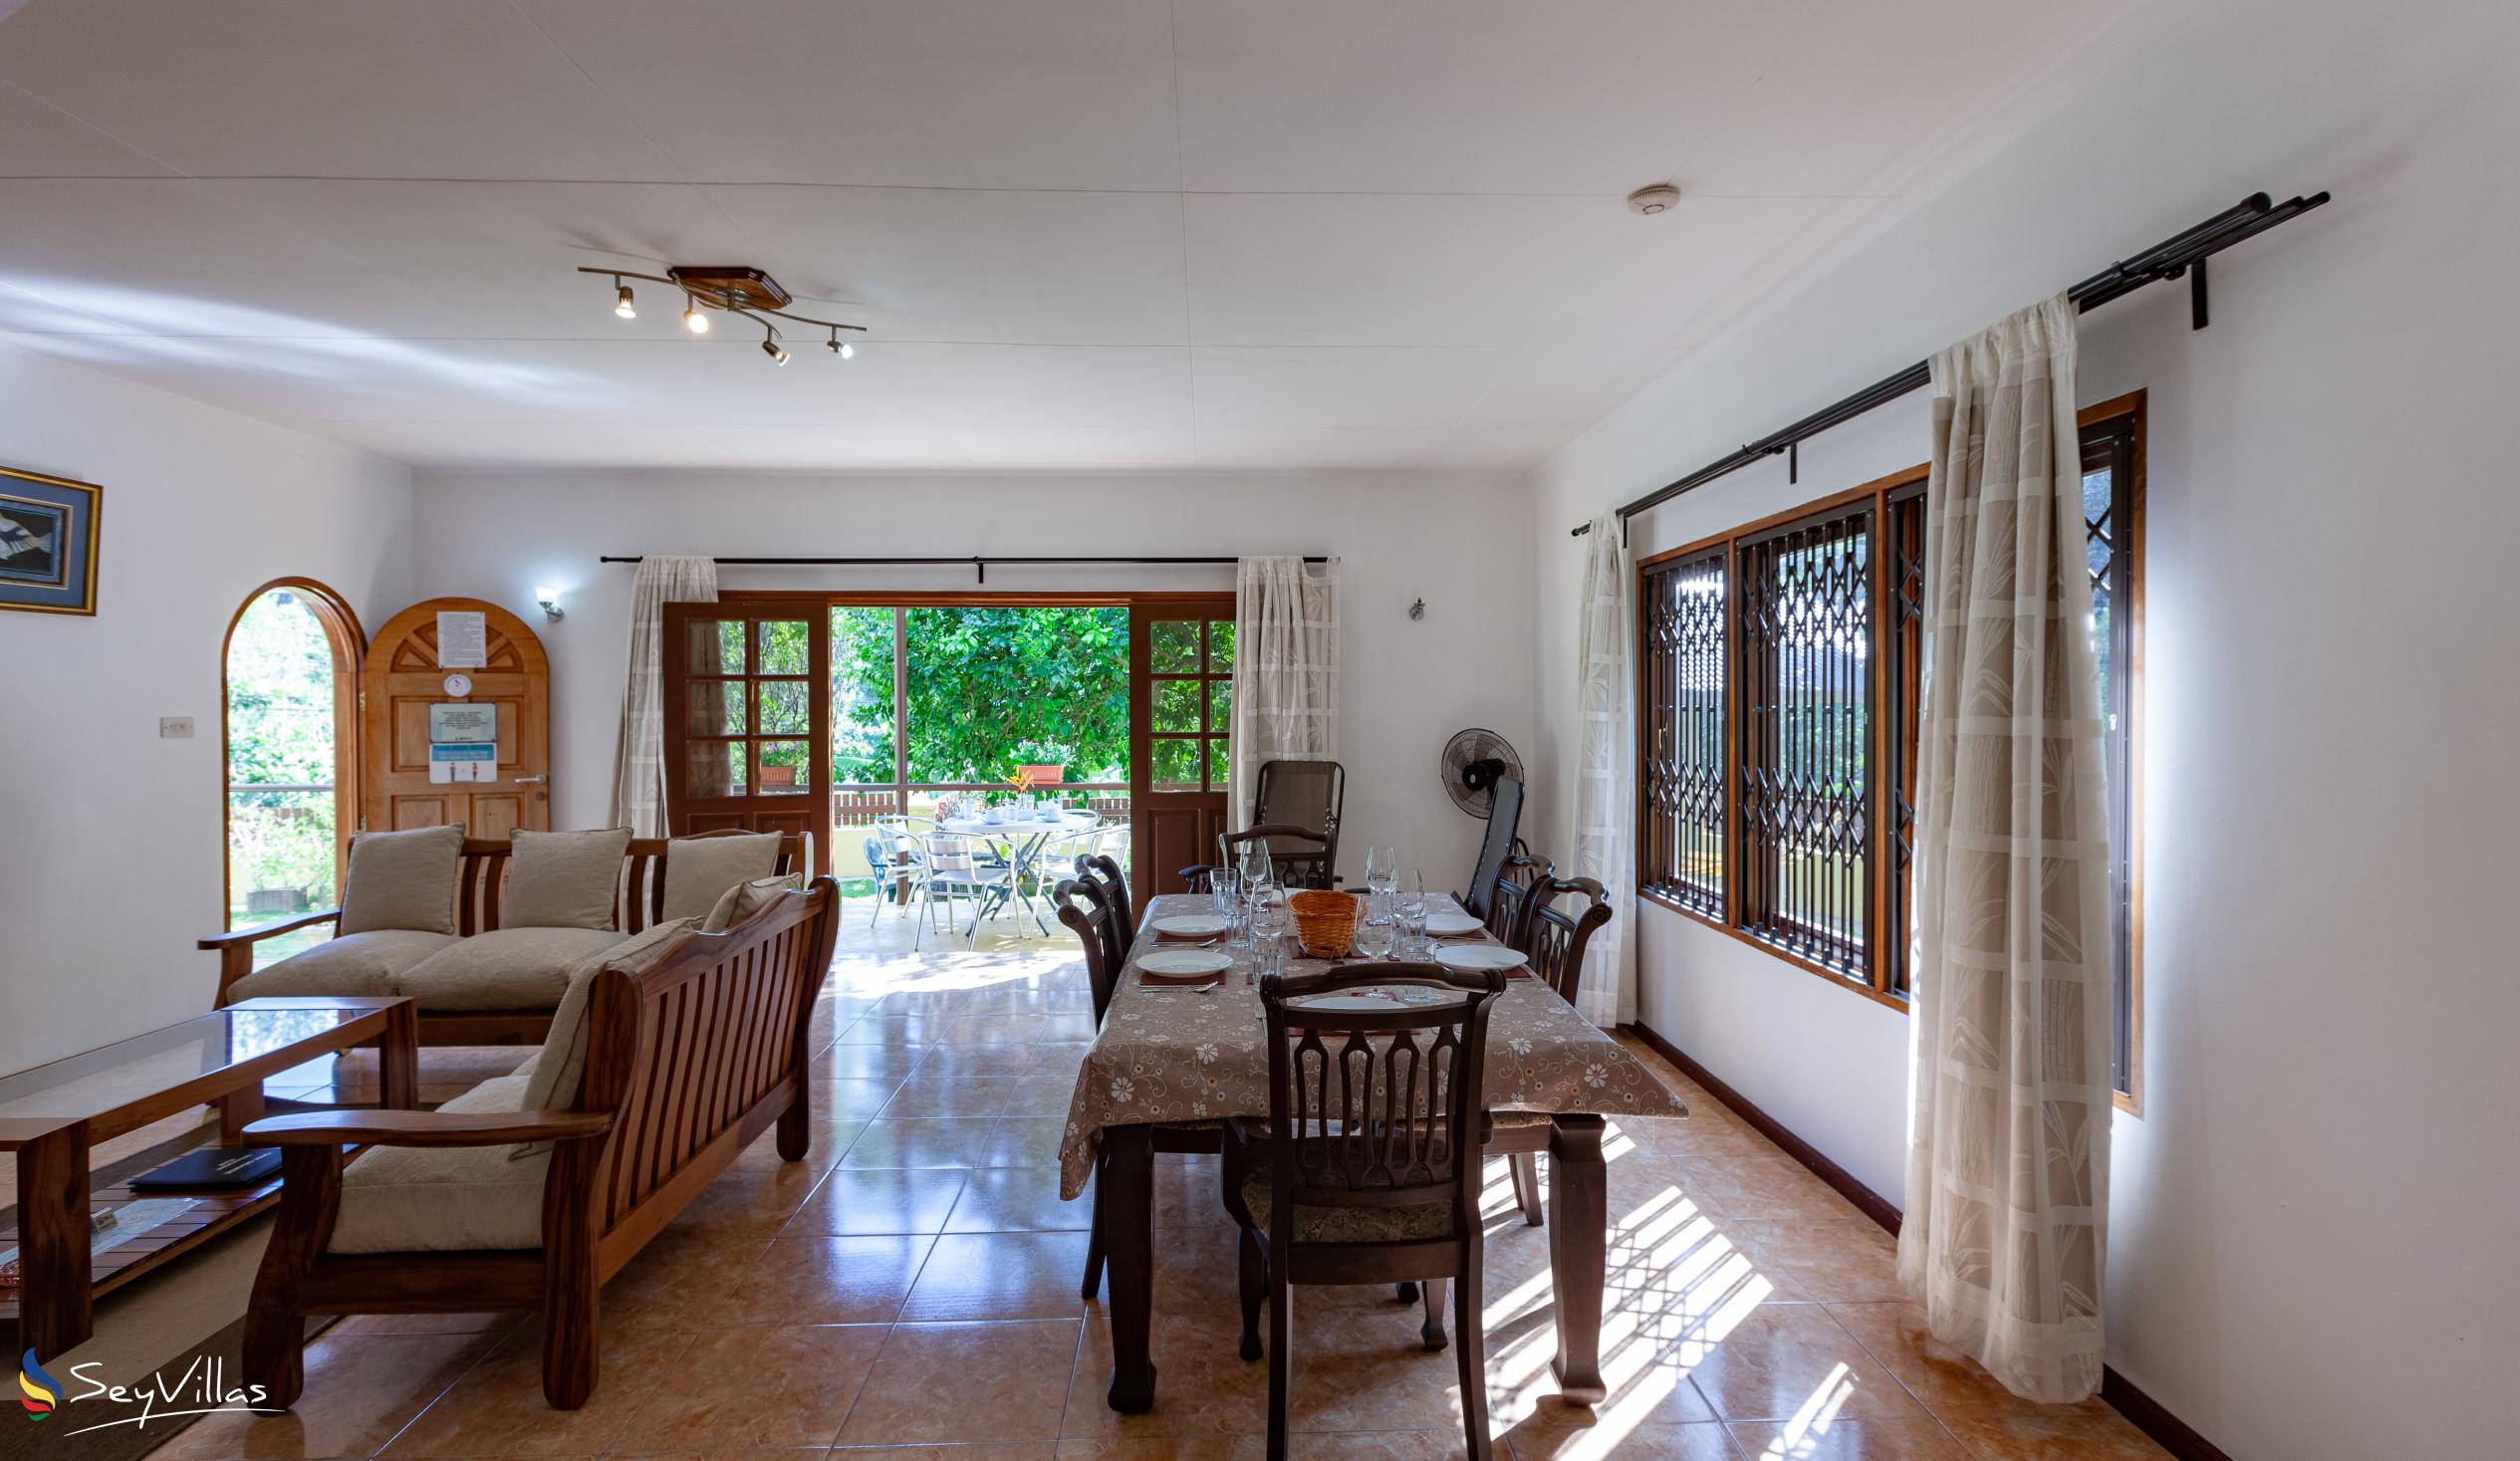 Photo 33: La Casa Grande - Indoor area - Praslin (Seychelles)